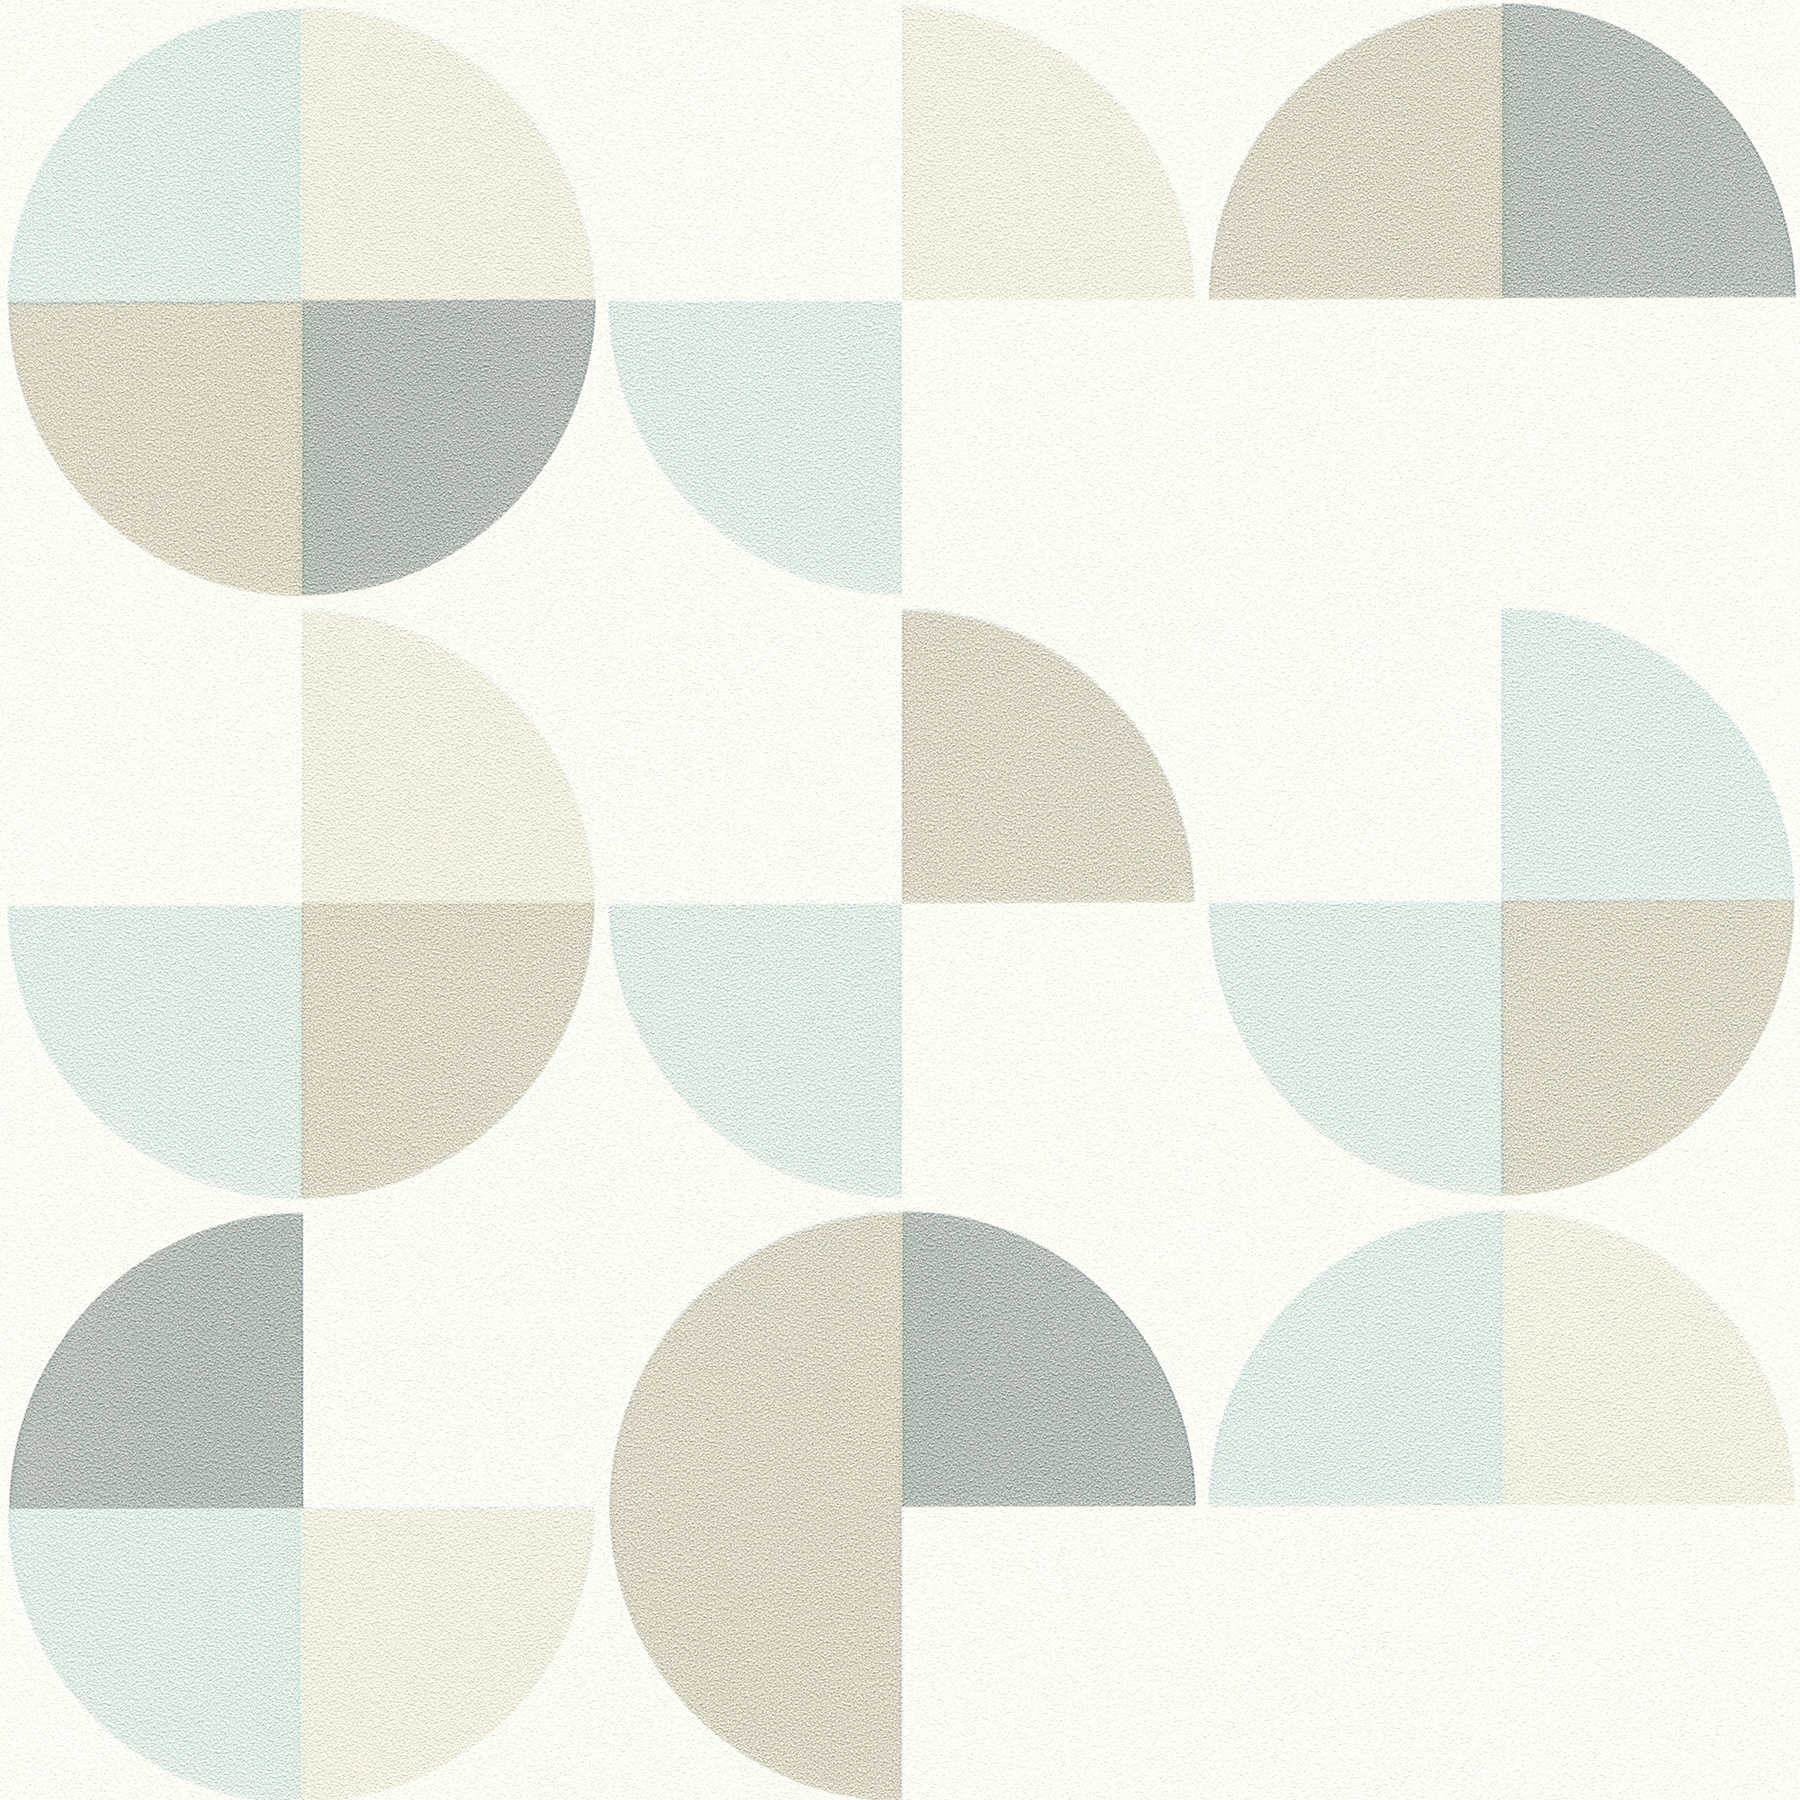 Scandinavian style geometric pattern wallpaper - blue, grey, beige
